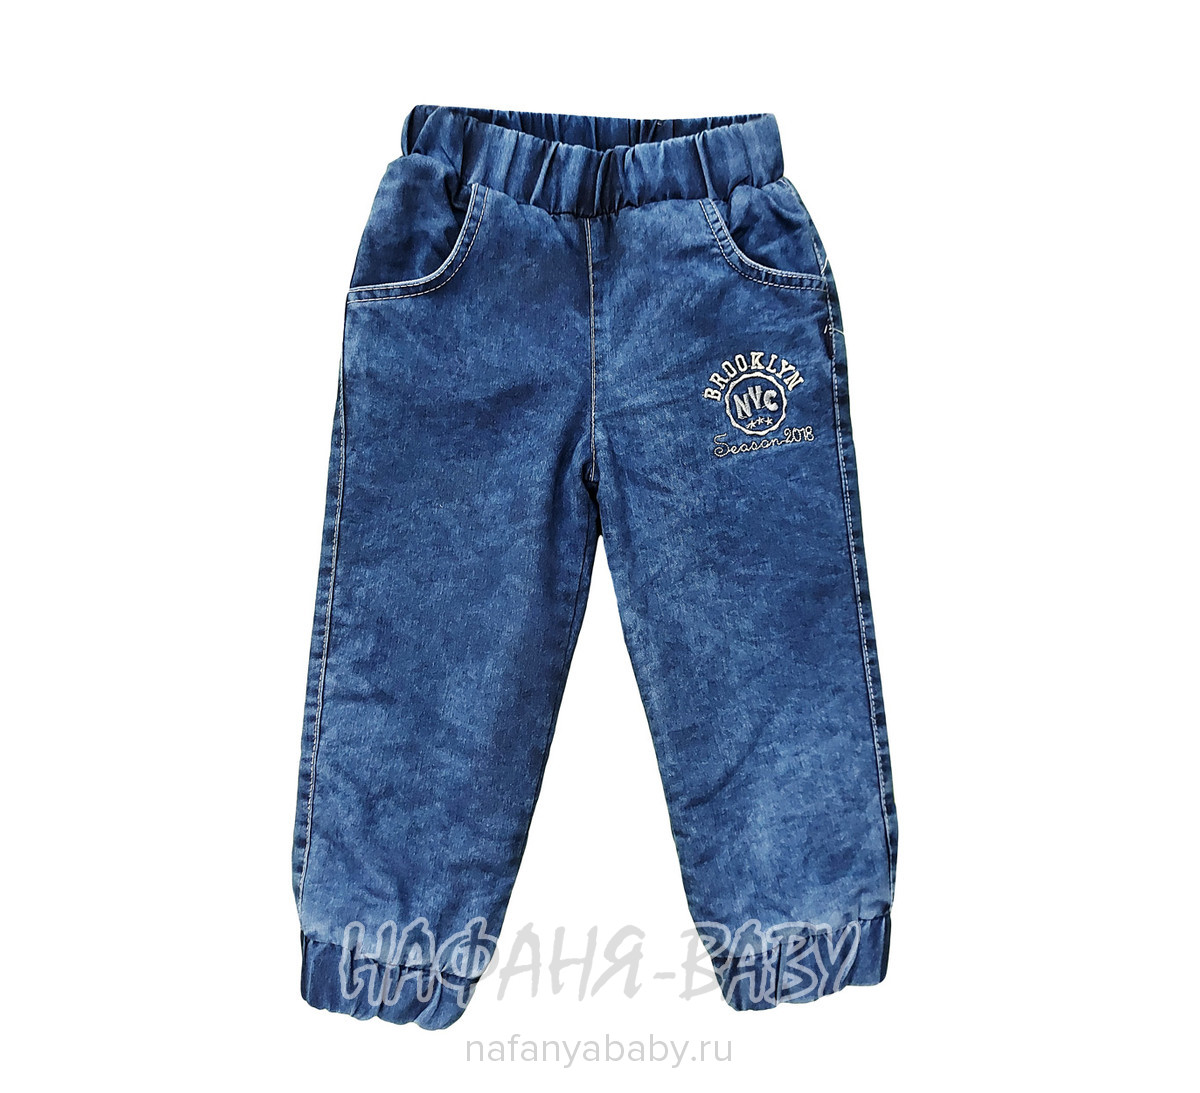 Детские теплые джинсы AKIRA арт: 2617, 1-4 года, оптом Турция